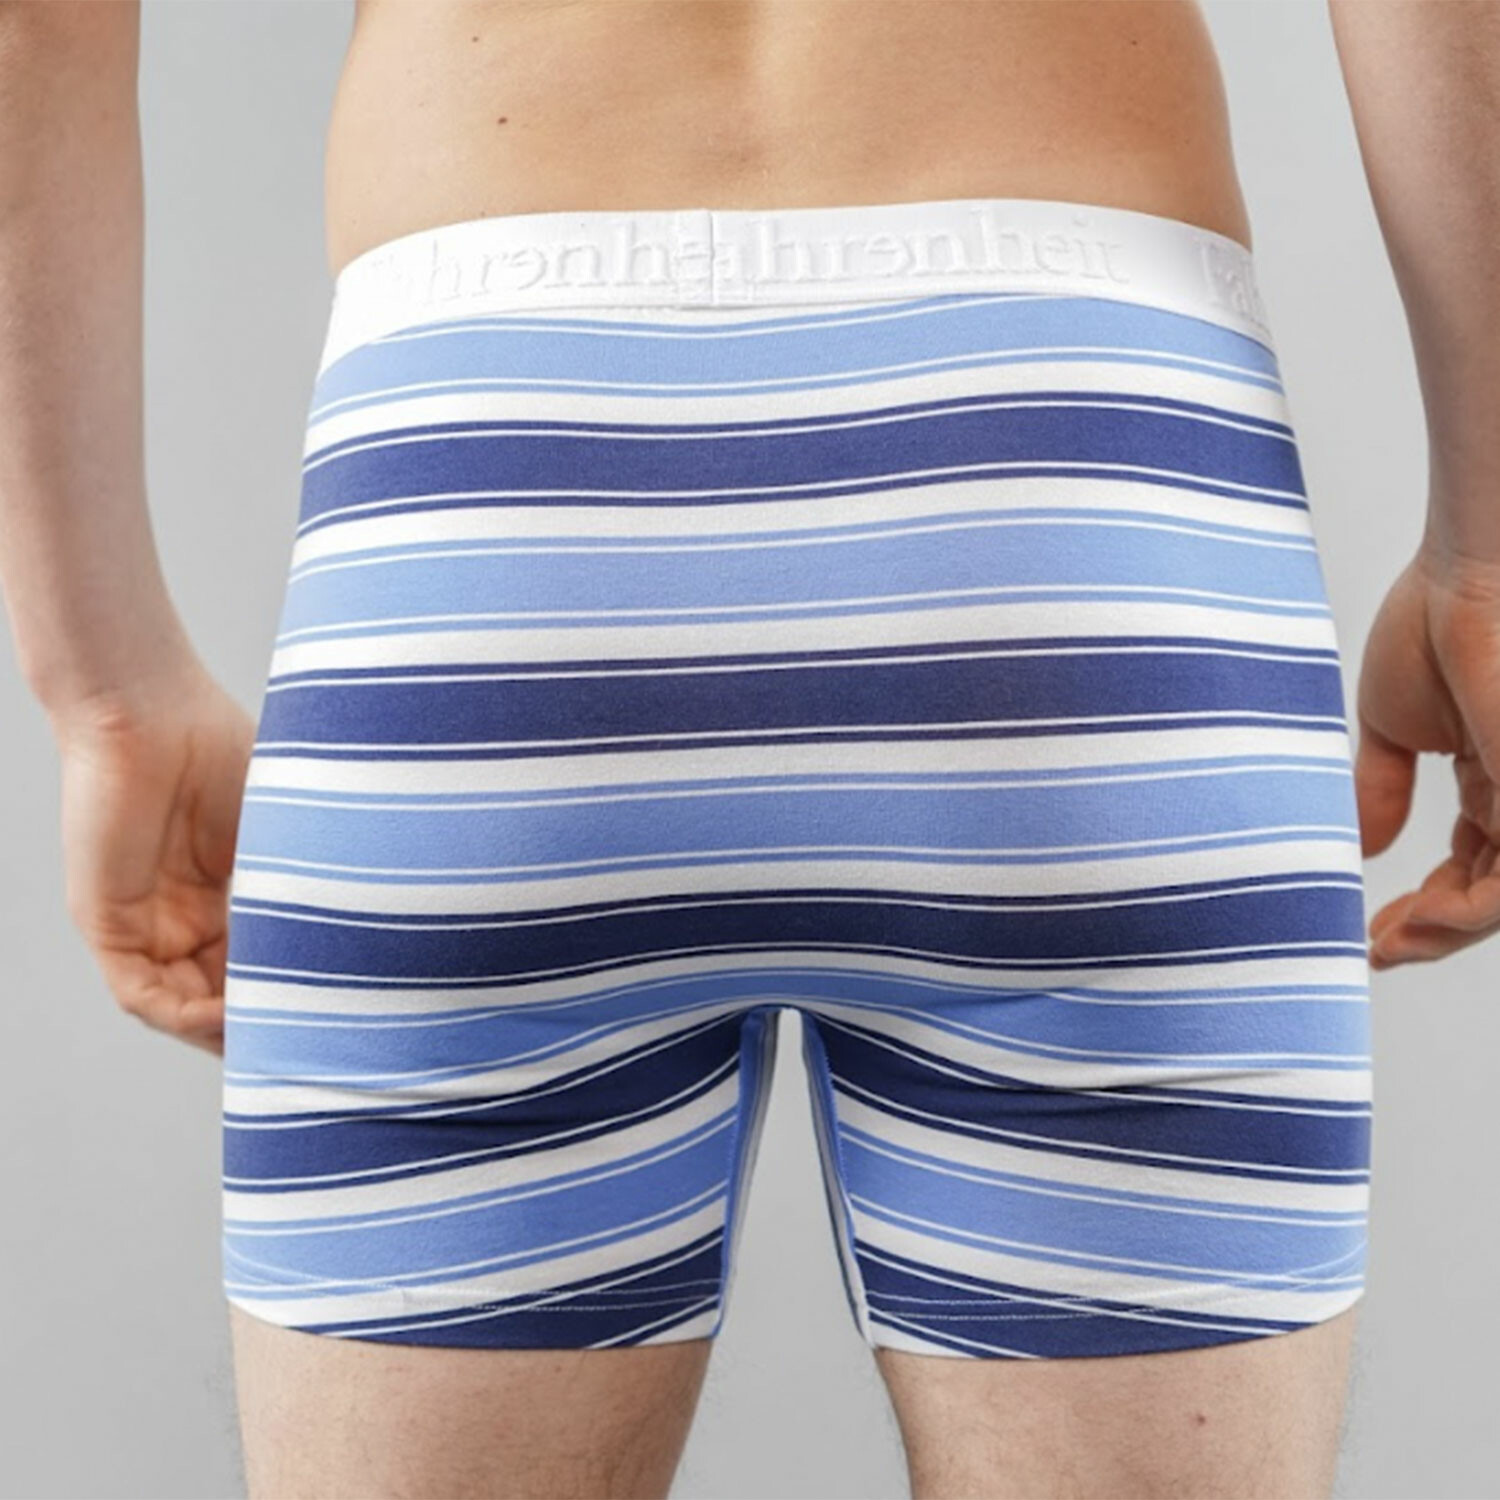 Boxer Brief // Stripe Bundle (M) - Fahrenheit Men's Bodywear - Touch of ...